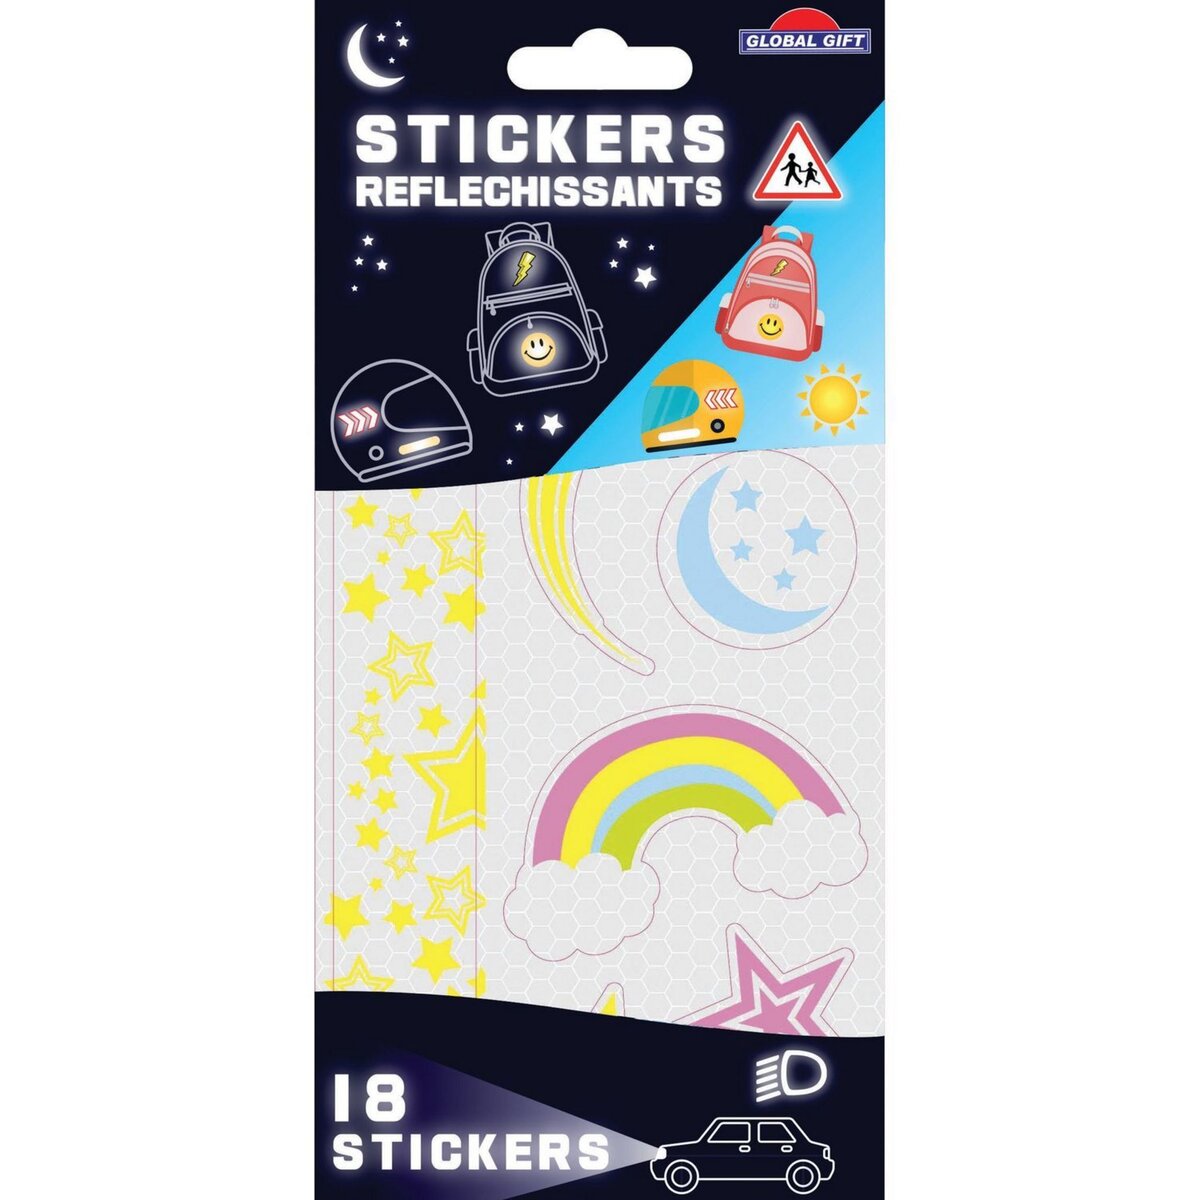 18 stickers rétro-réfléchissants - Étoiles - Résistants et imperméables pas  cher 